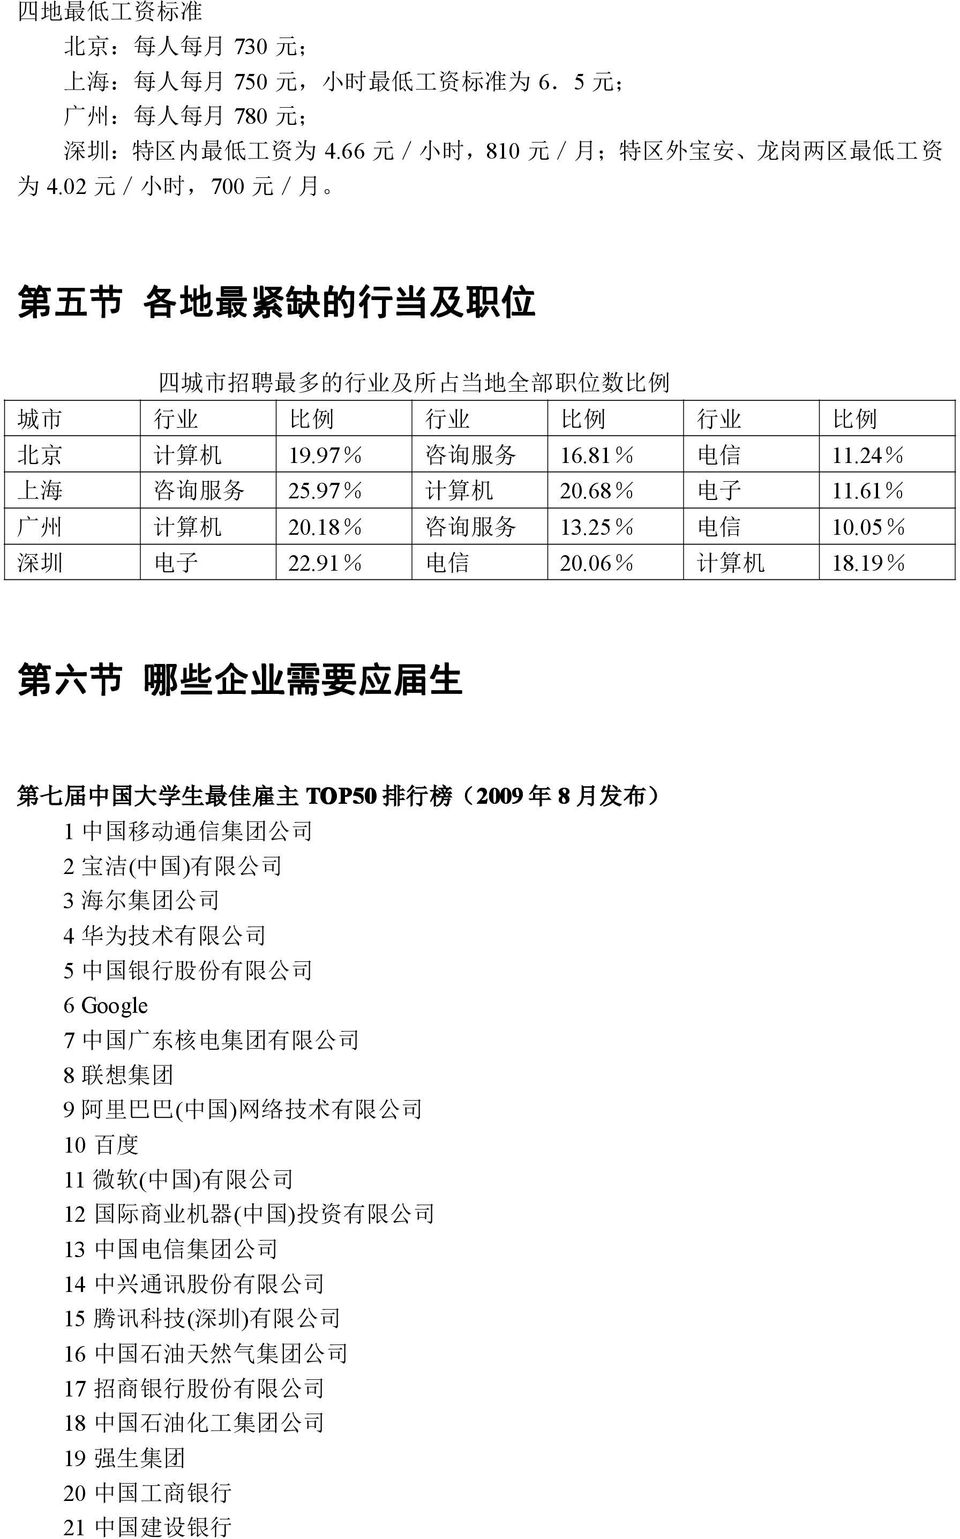 68% 电 子 11.61% 广 州 计 算 机 20.18% 咨 询 服 务 13.25% 电 信 10.05% 深 圳 电 子 22.91% 电 信 20.06% 计 算 机 18.